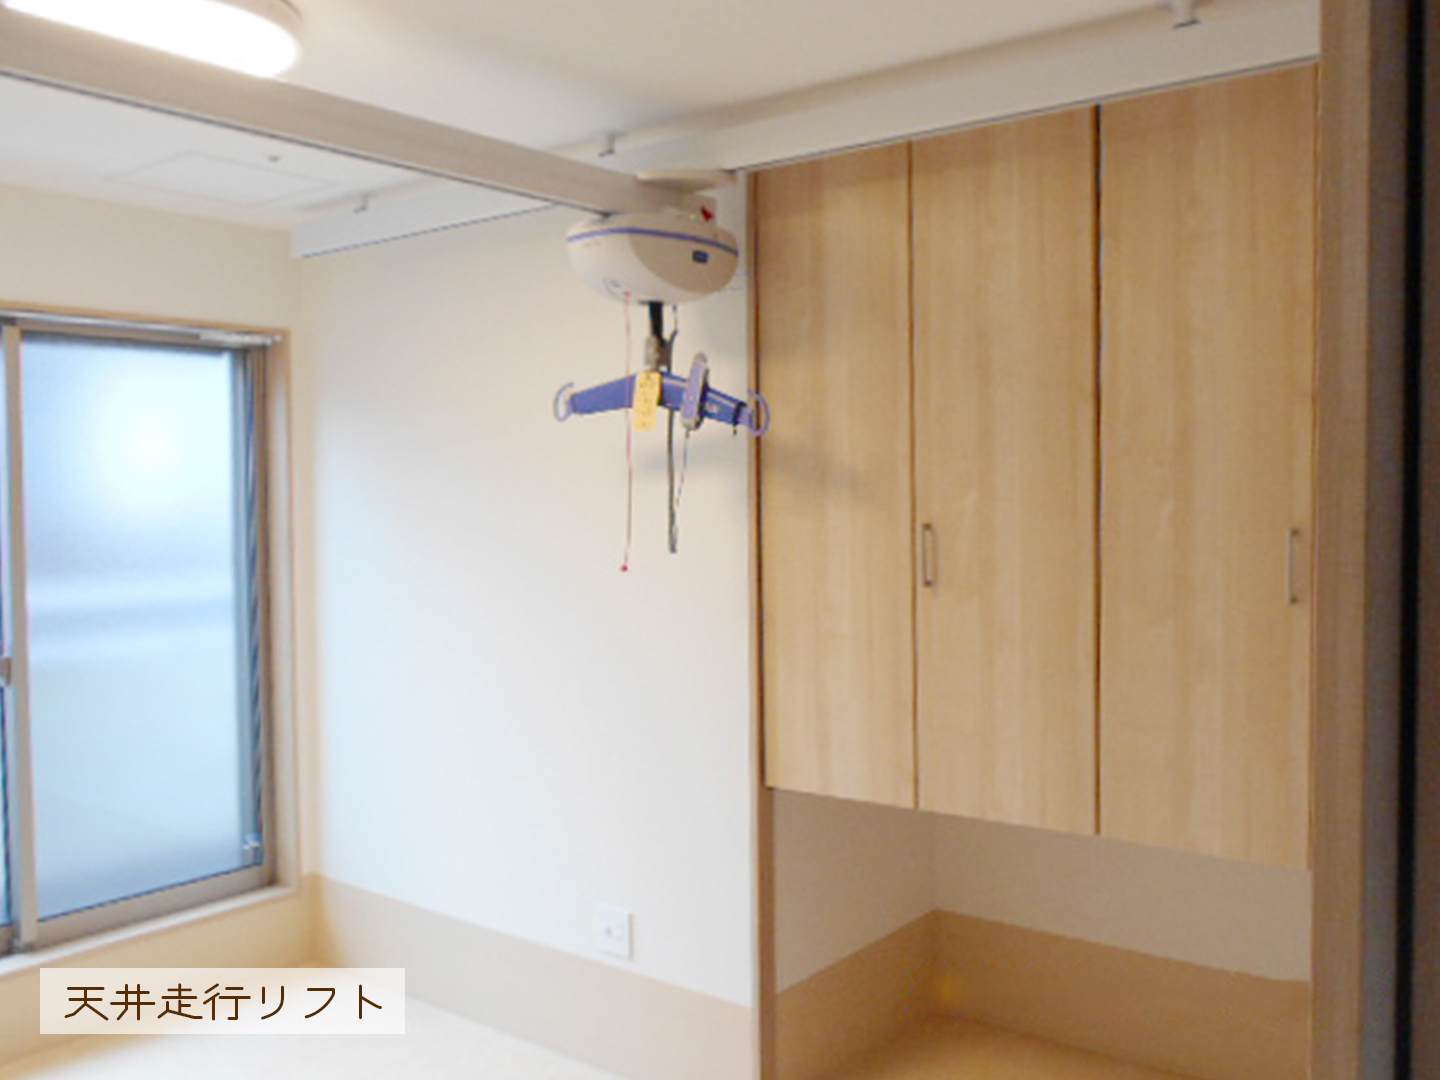 施工事例：介助しやすいように各居室に天井走行リフトを設置しました